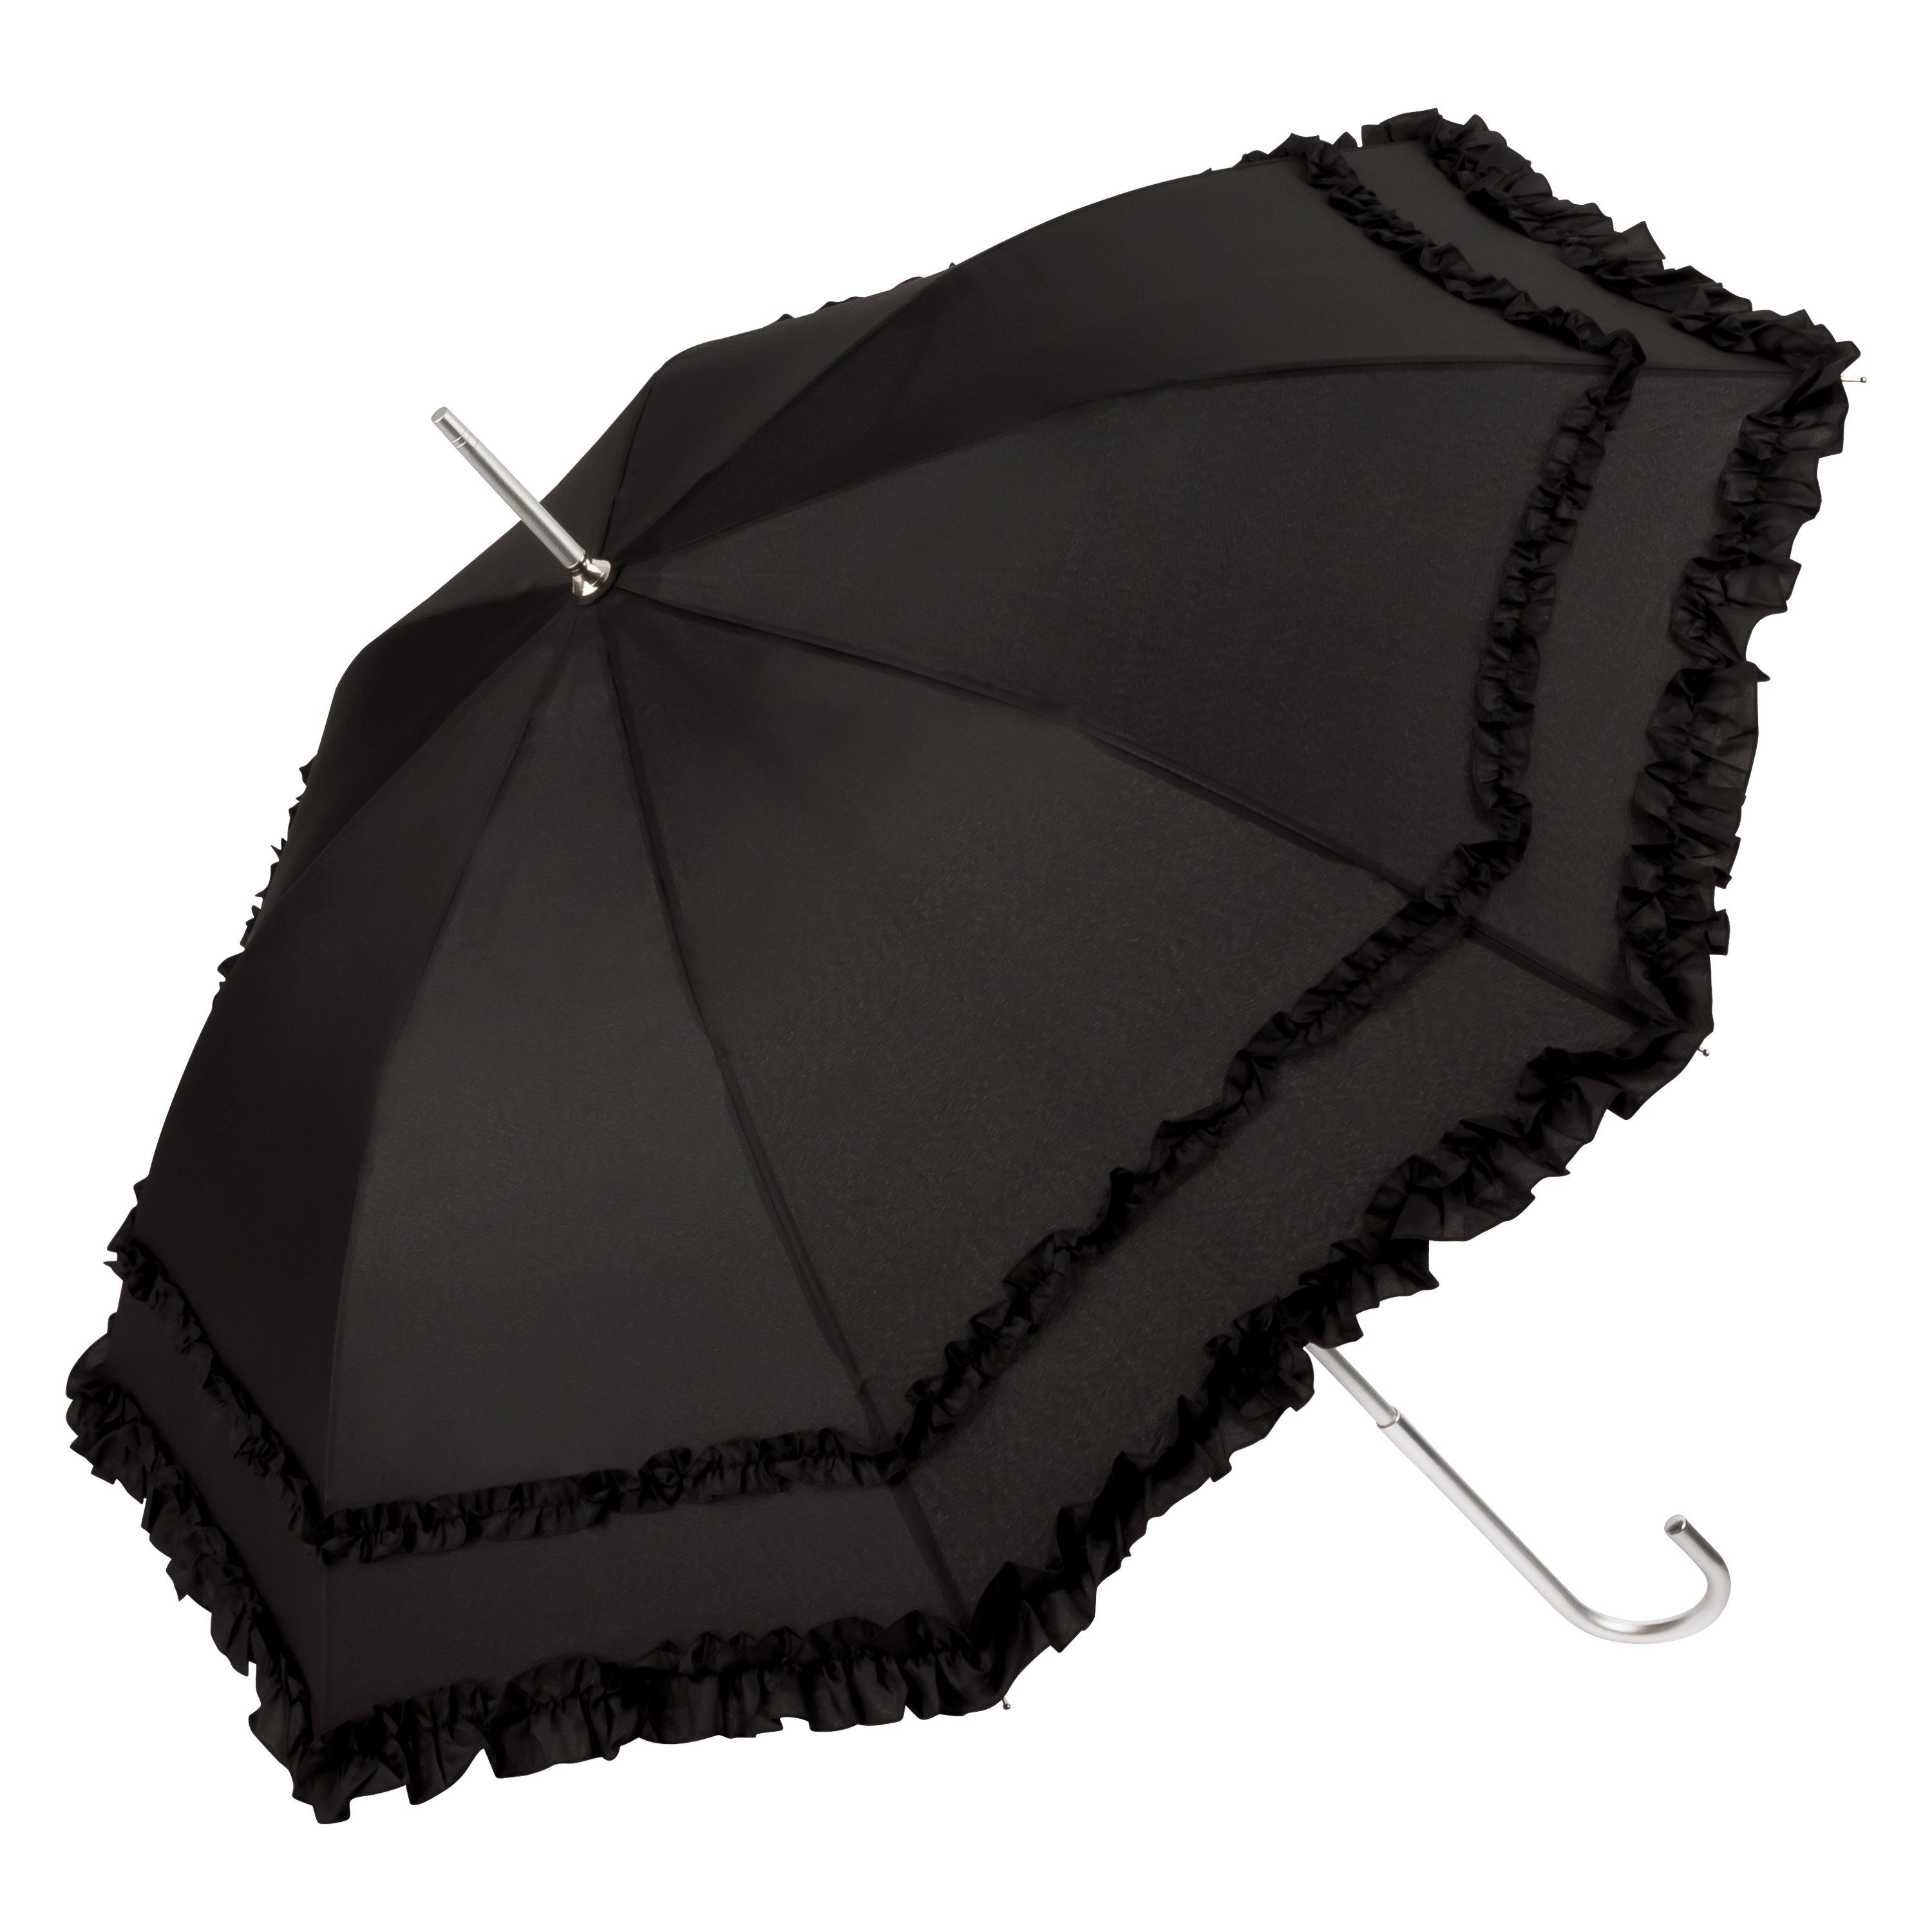 von Lilienfeld Stockregenschirm Regenschirm Sonnenschirm Mary, Hochzeitsschirm zwei Rüschenkanten schwarz